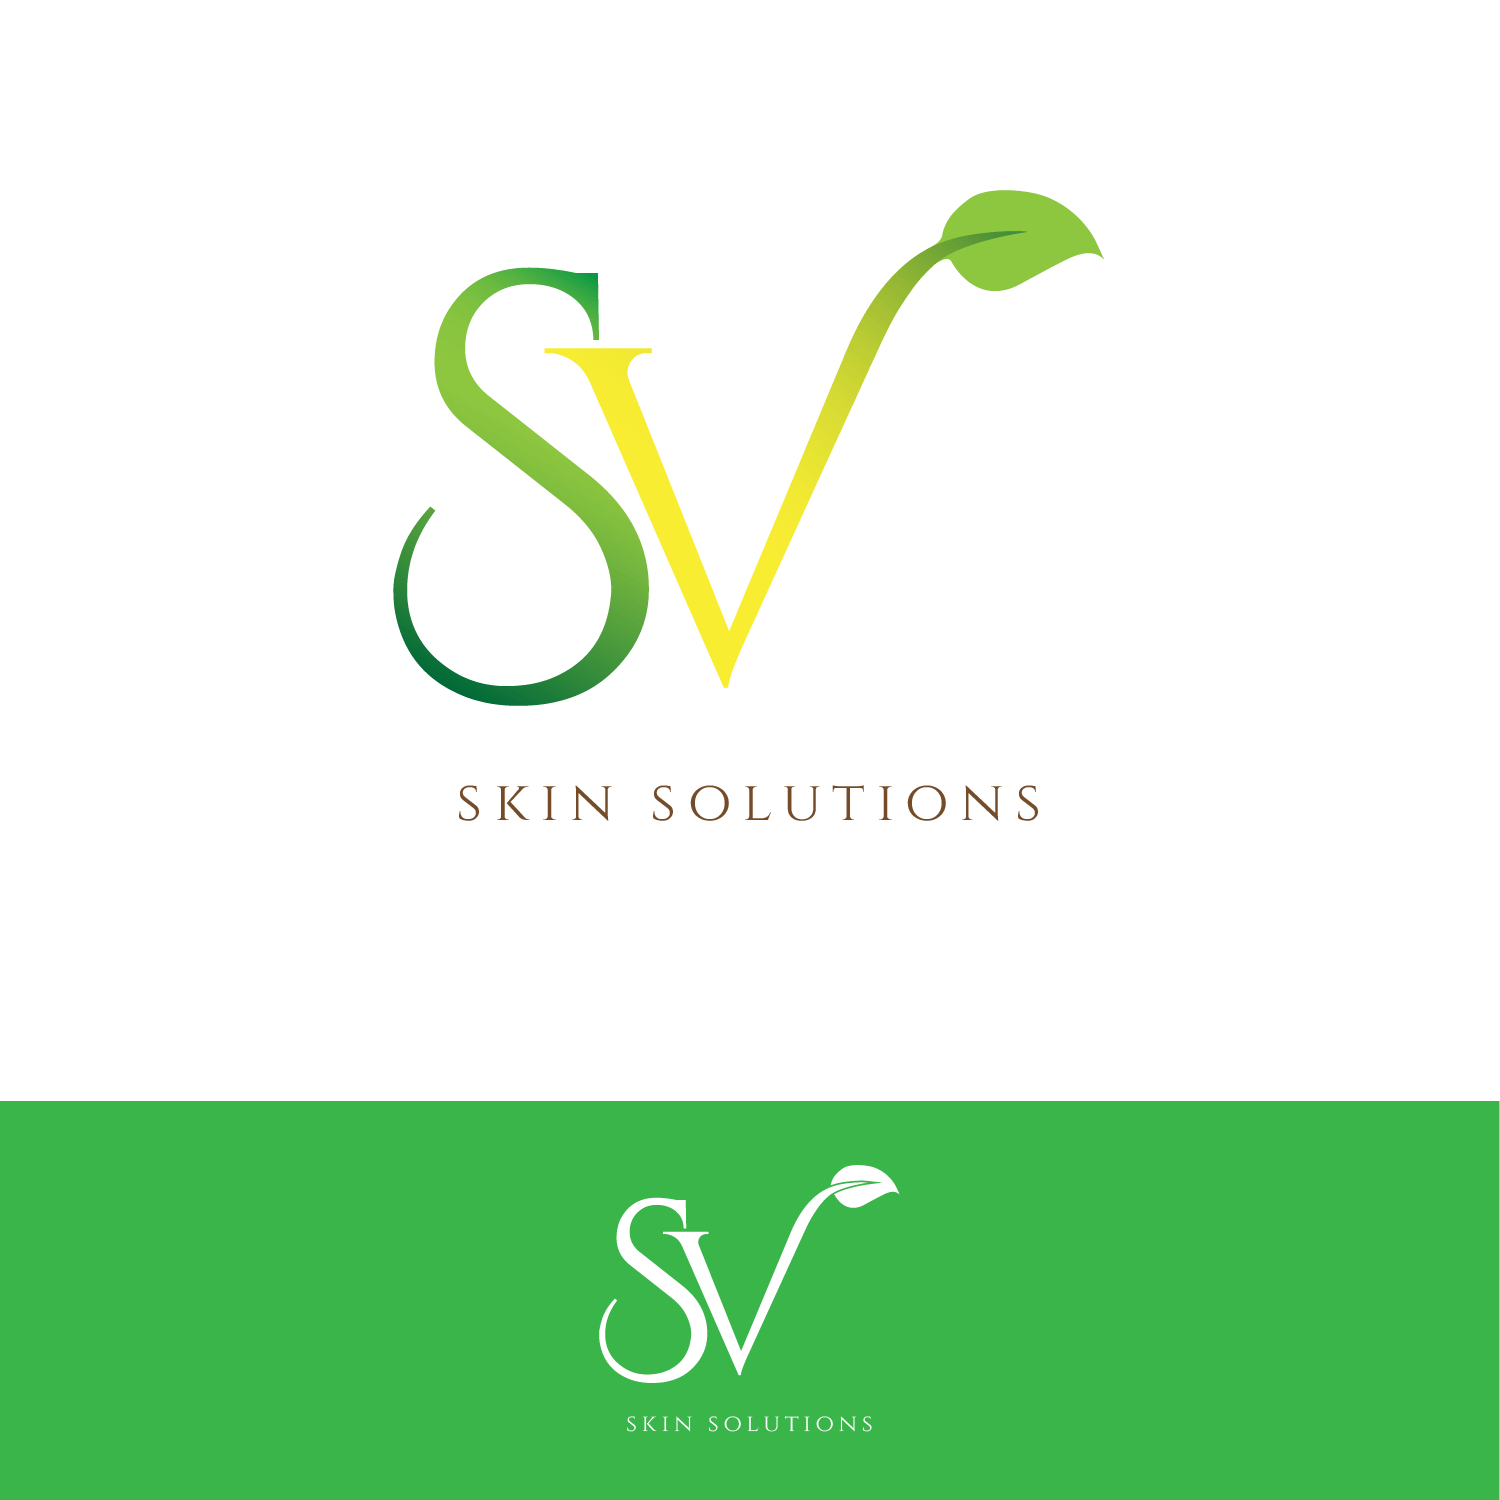 SV Logo - Bold, Playful, Skin Care Product Logo Design for SV skin solutions